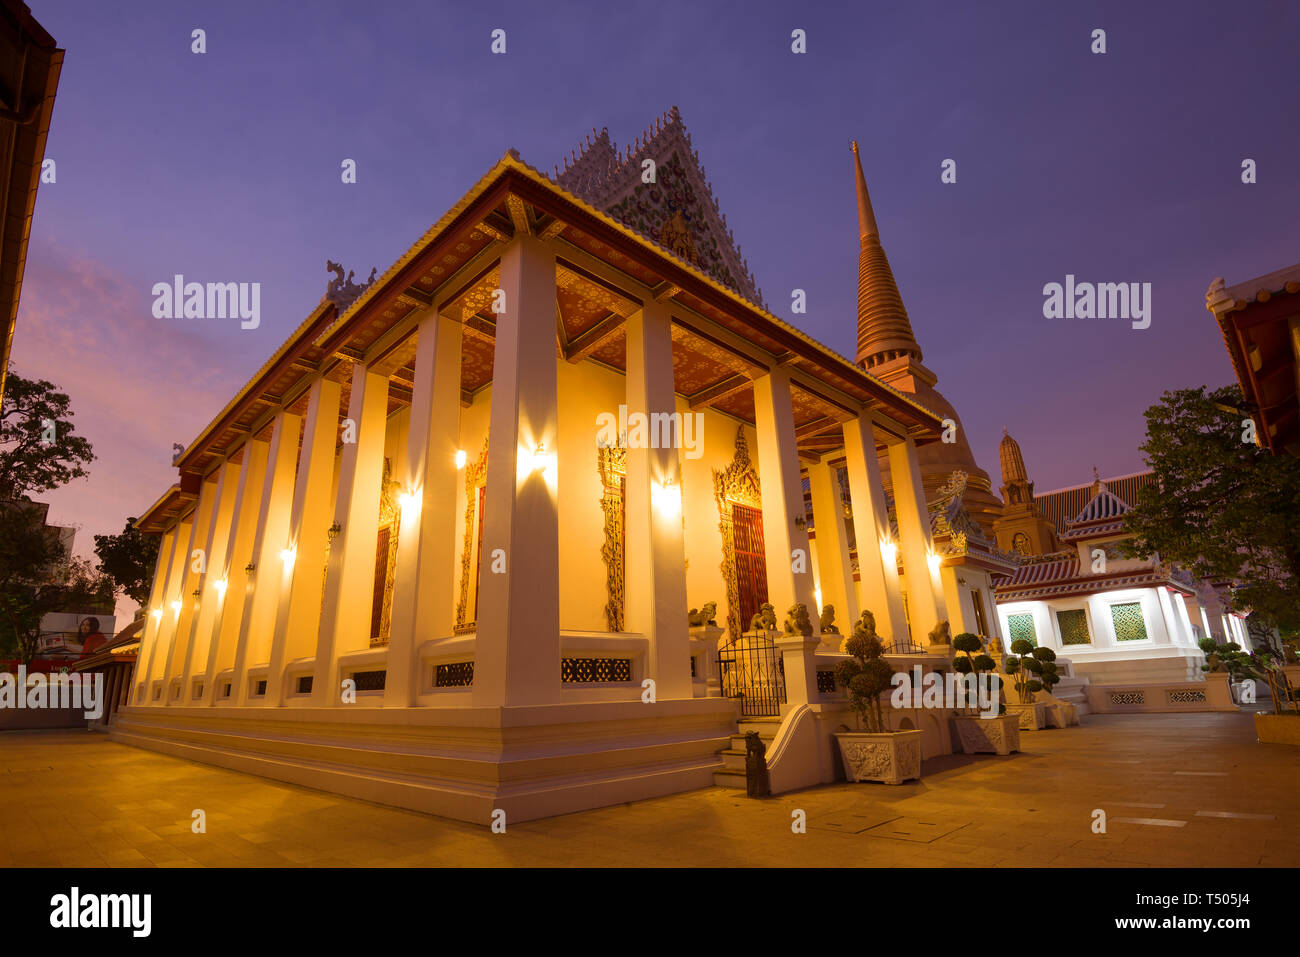 BANGKOK, THAÏLANDE - 01 janvier 2019 - crépuscule du soir dans le temple bouddhiste de Wat Bowonniwet Vihara Banque D'Images